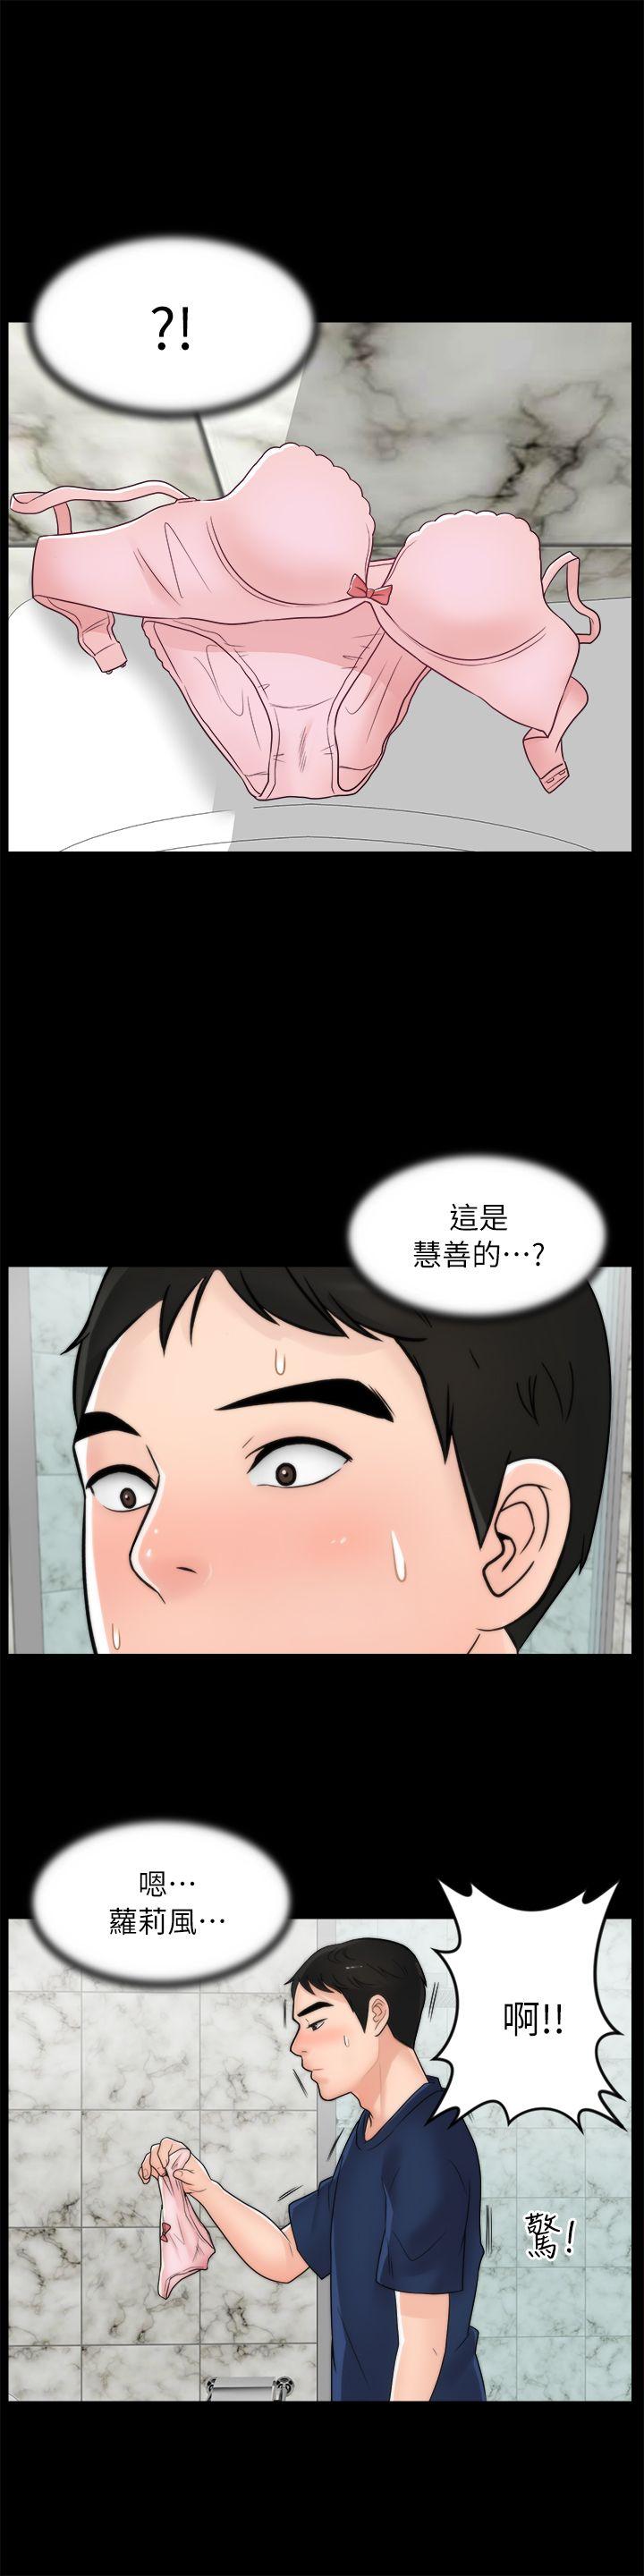 韩国污漫画 偷偷愛 第19话-小女儿的诱惑 1